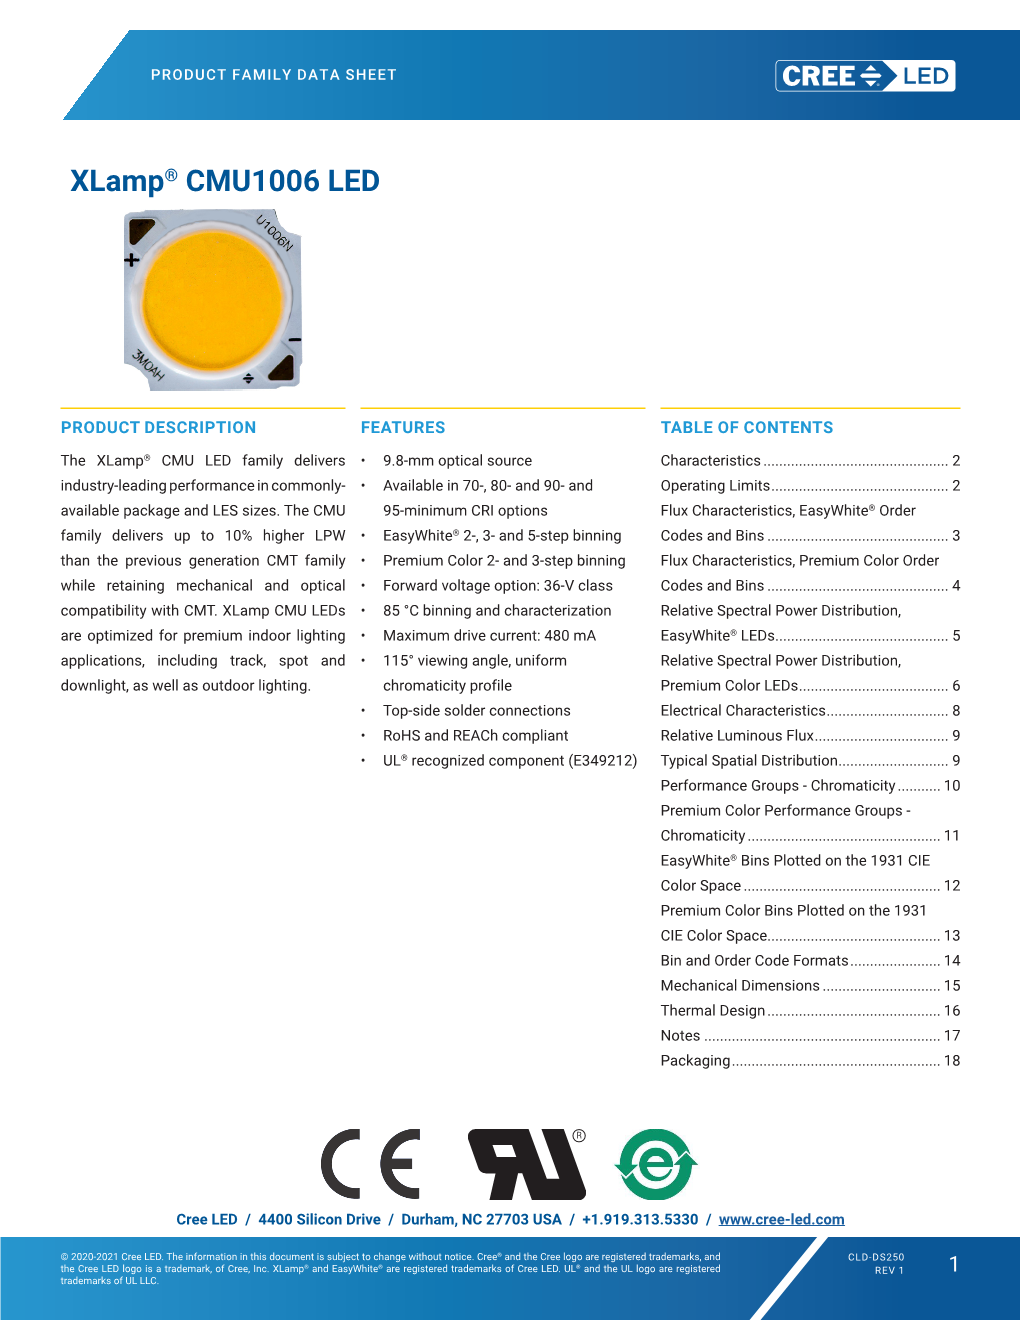 Xlamp CMU1006 LED Data Sheet